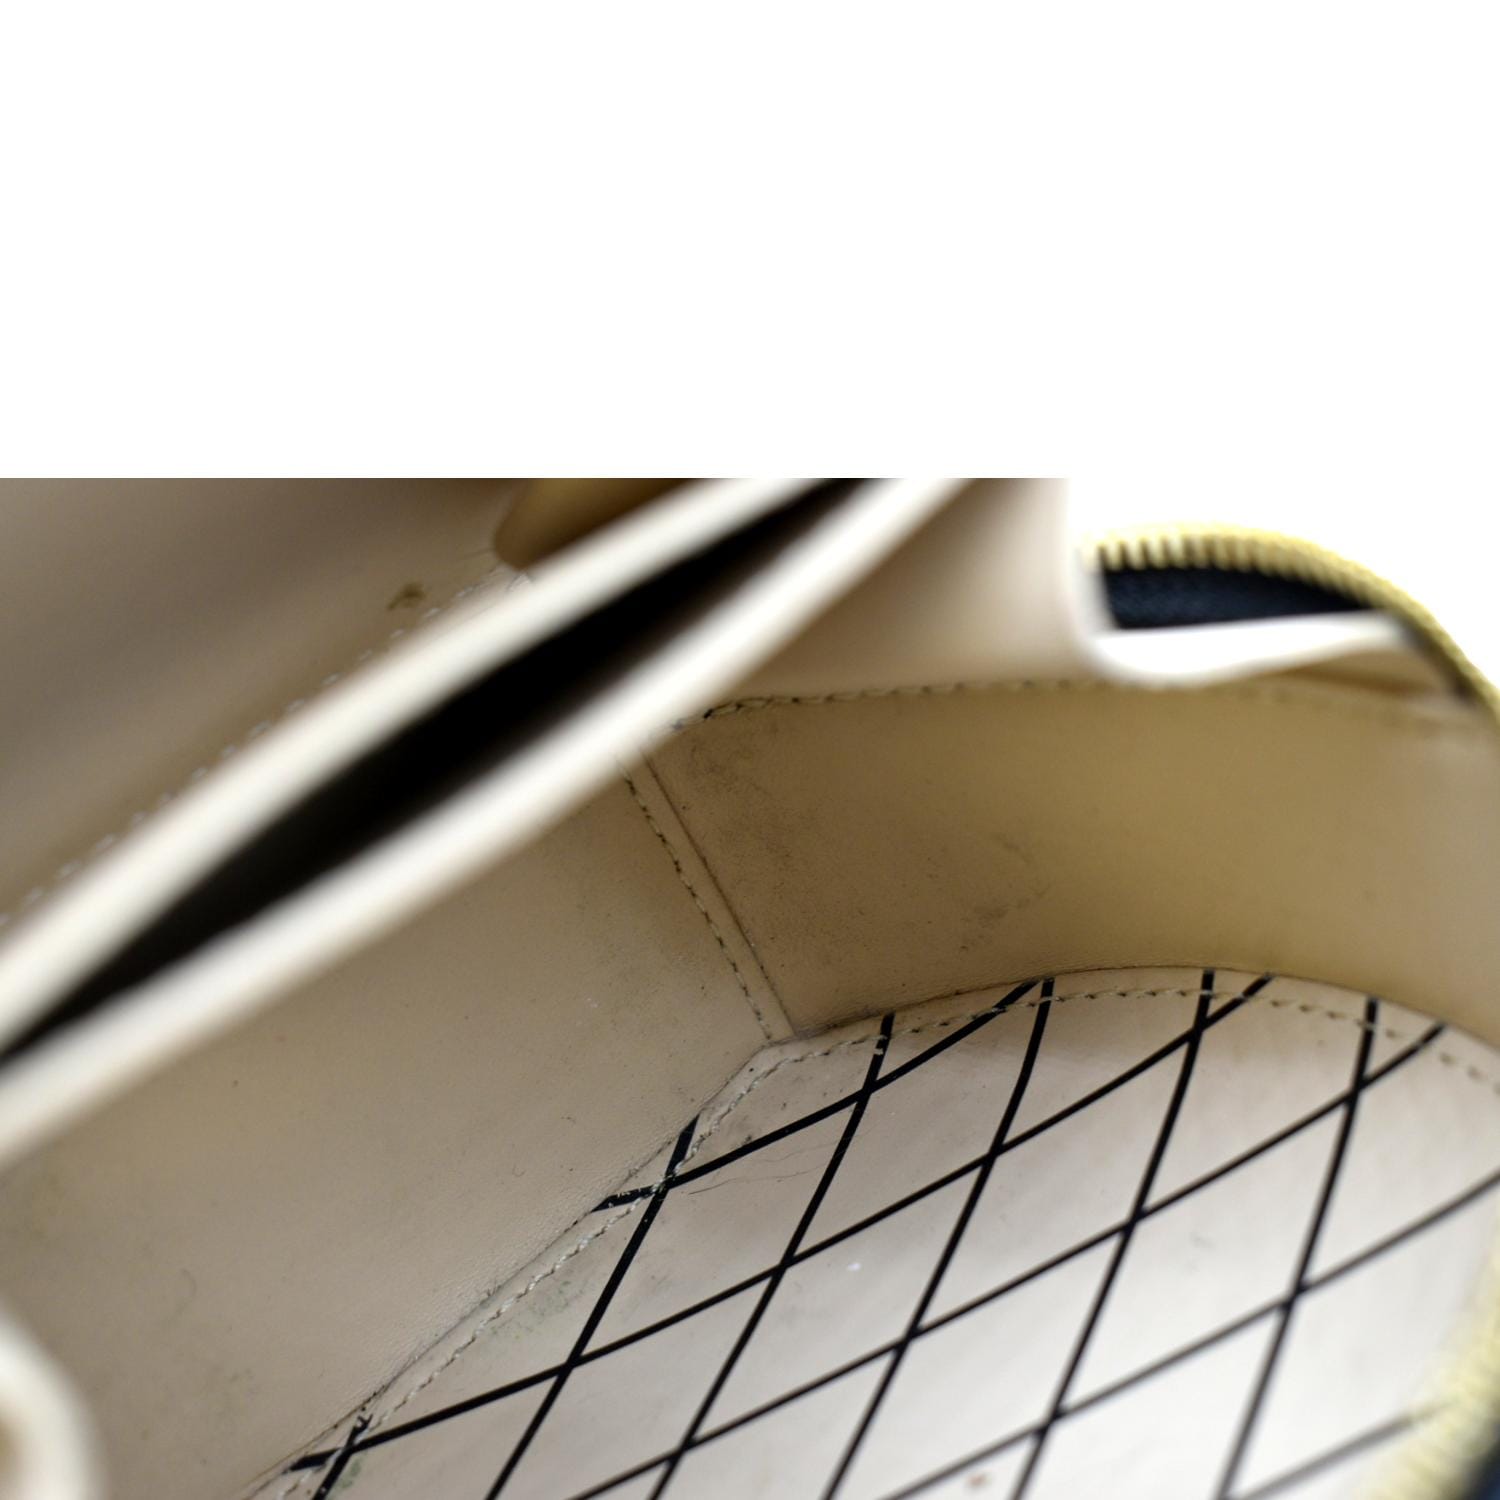 ✨NEW ARRIVAL✨ Louis Vuitton Reverse Monogram Petite Boite Chapeau Bag  $5,400.00 Microchipped Material: Reverse monogram canvas & black…